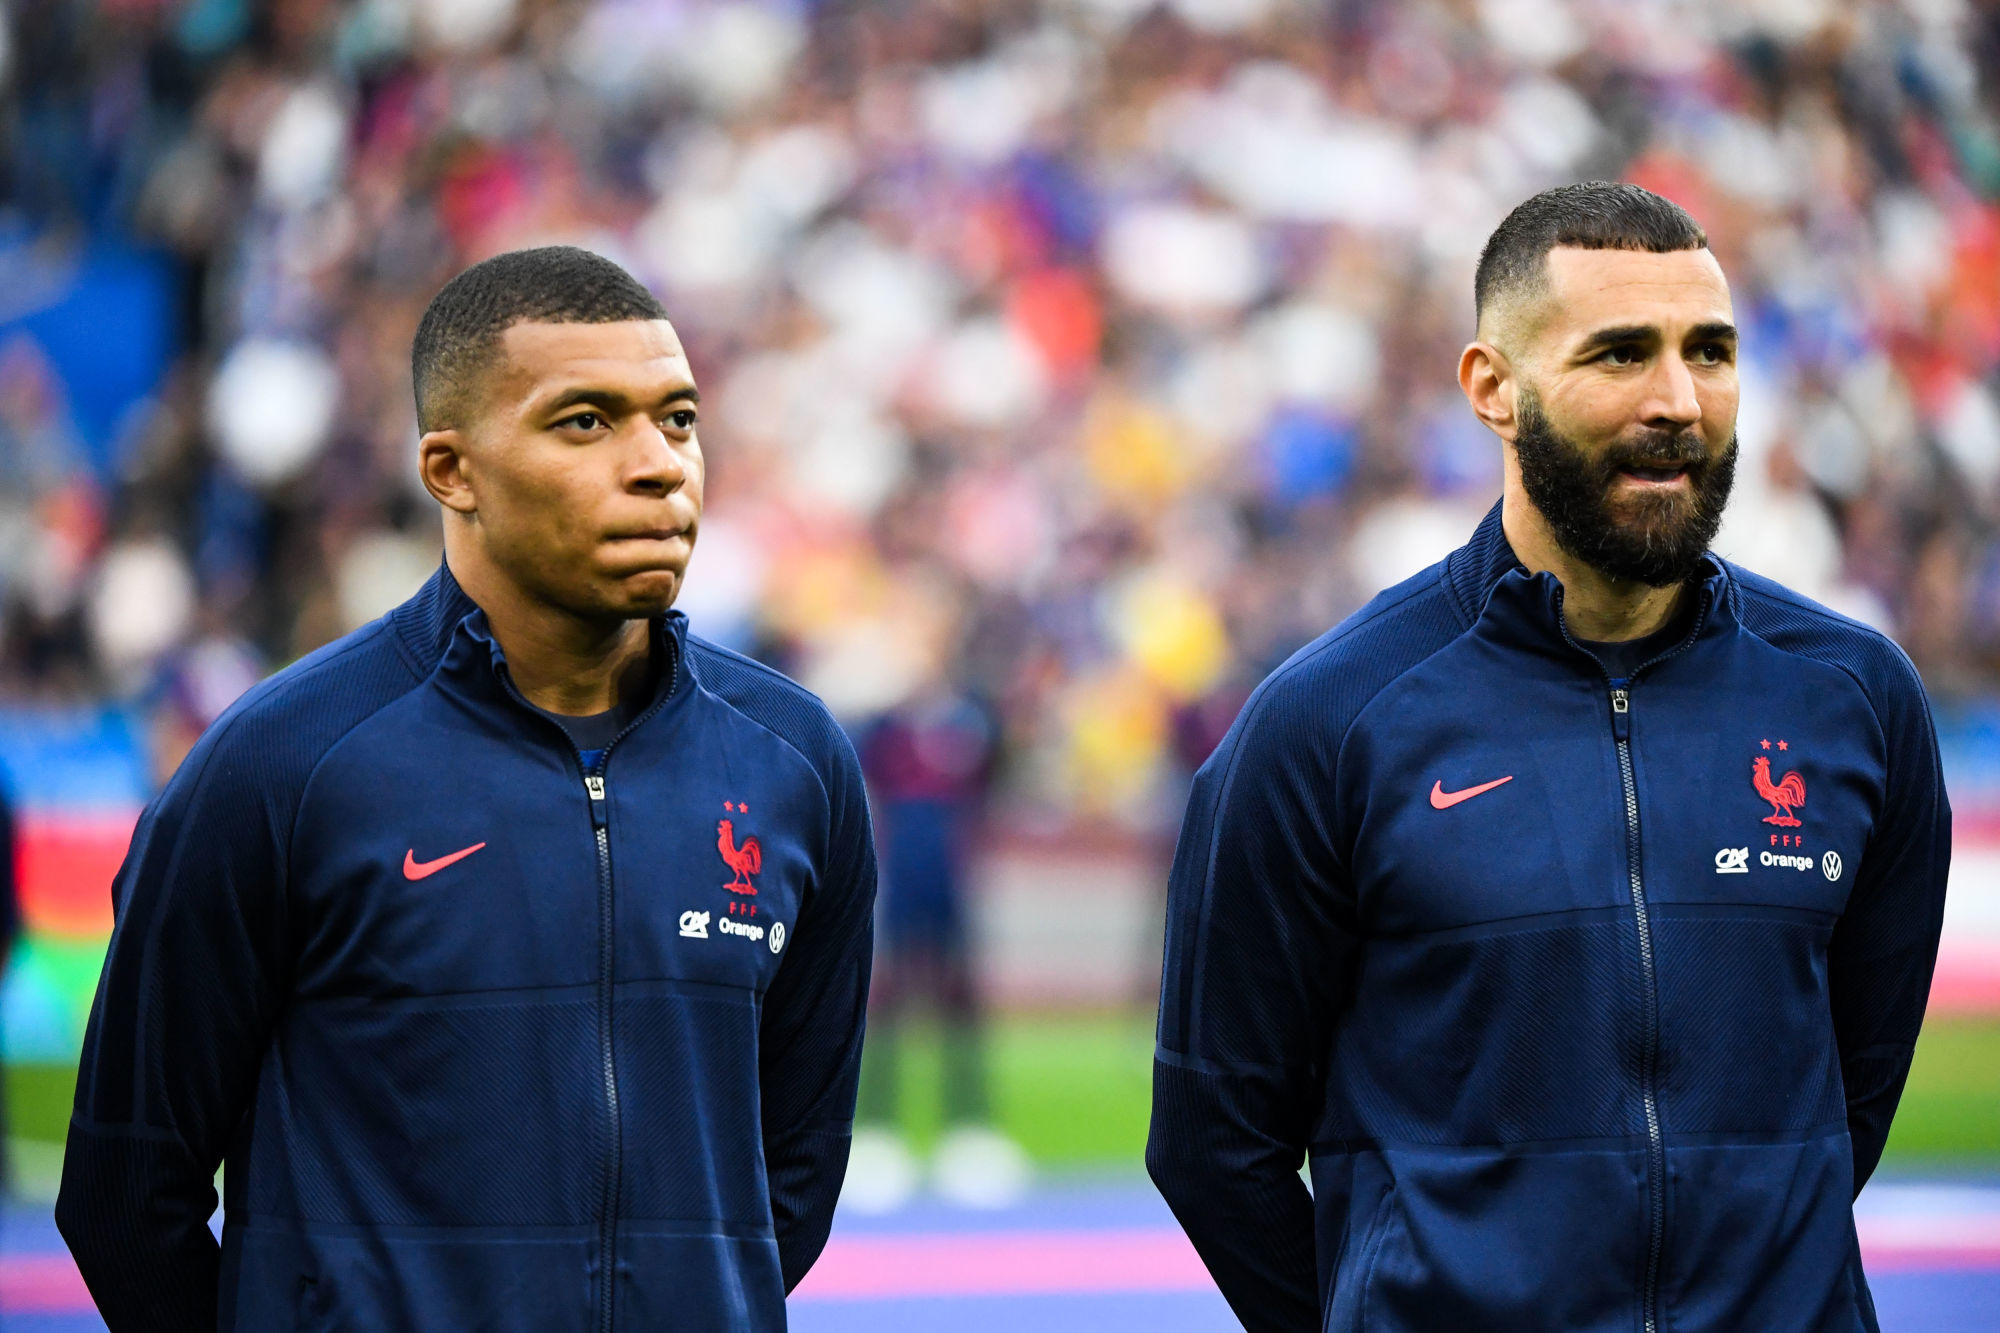 Équipe de France : les compositions probables contre la Croatie sans Mbappé et Benzema, mais avec Ben Yedder